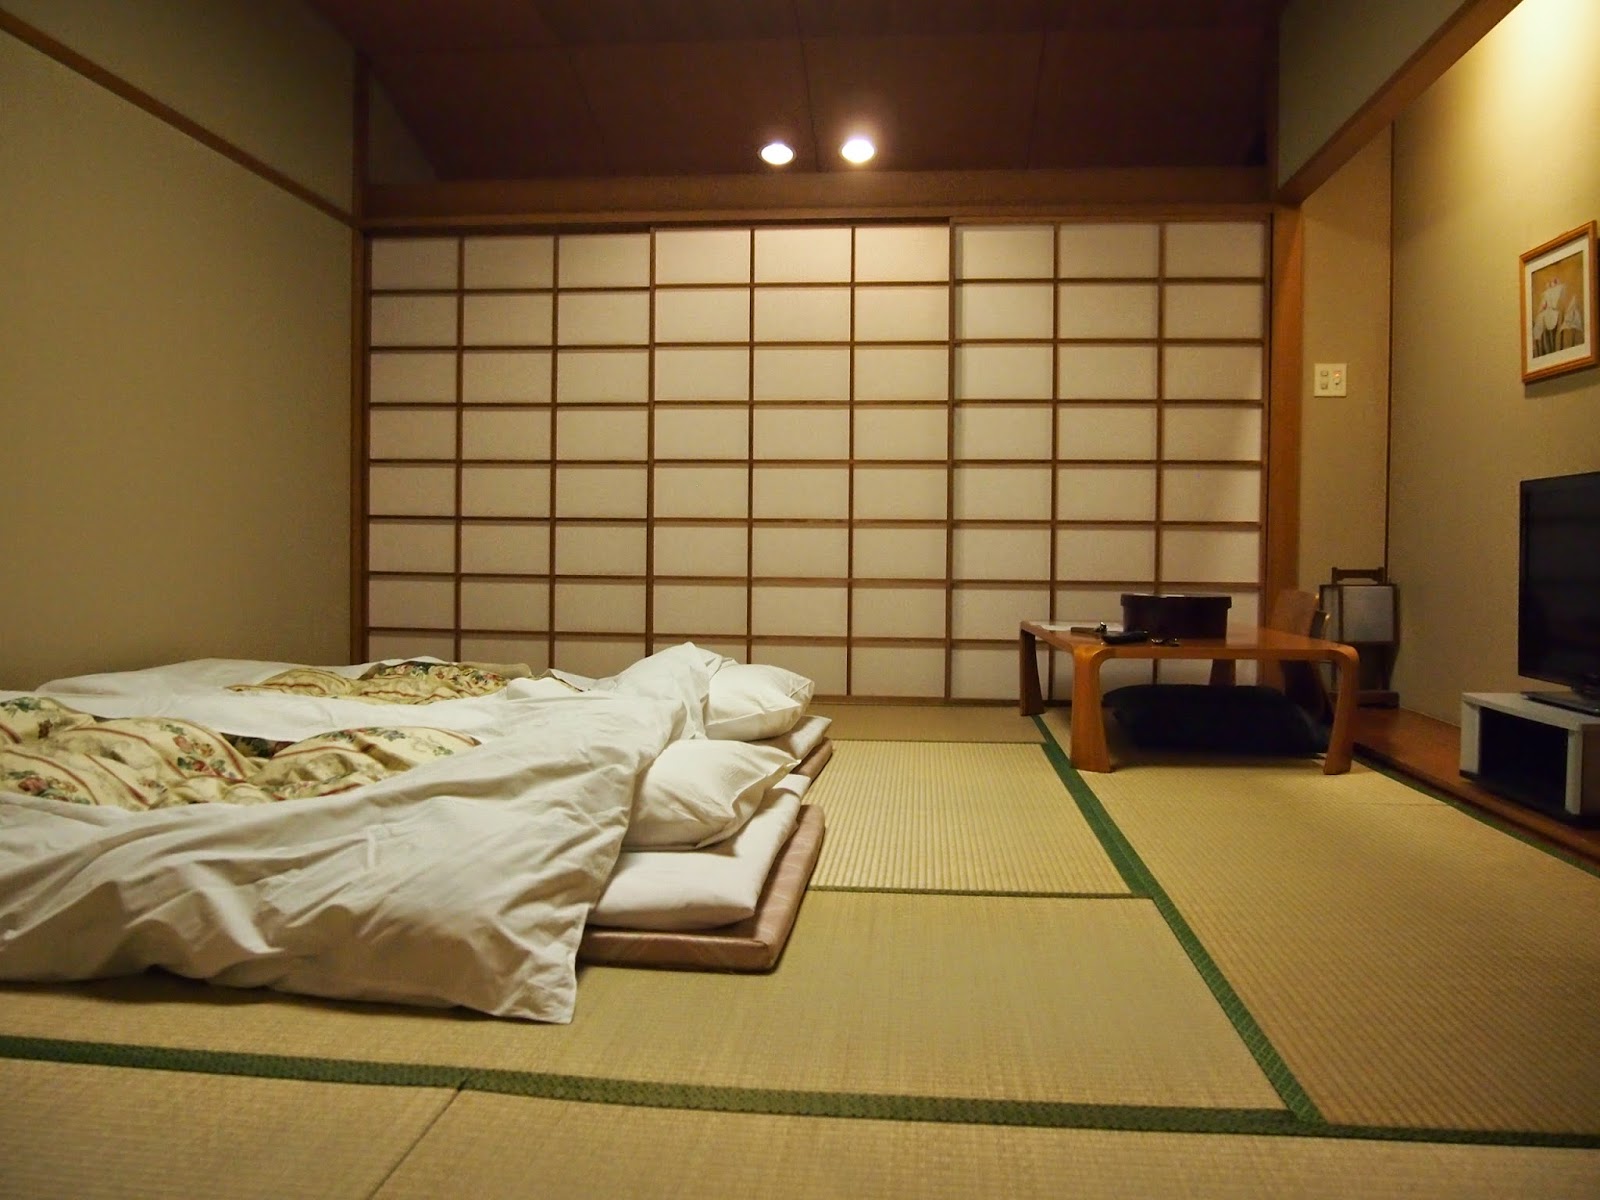 Циновка в спальне в японском стиле